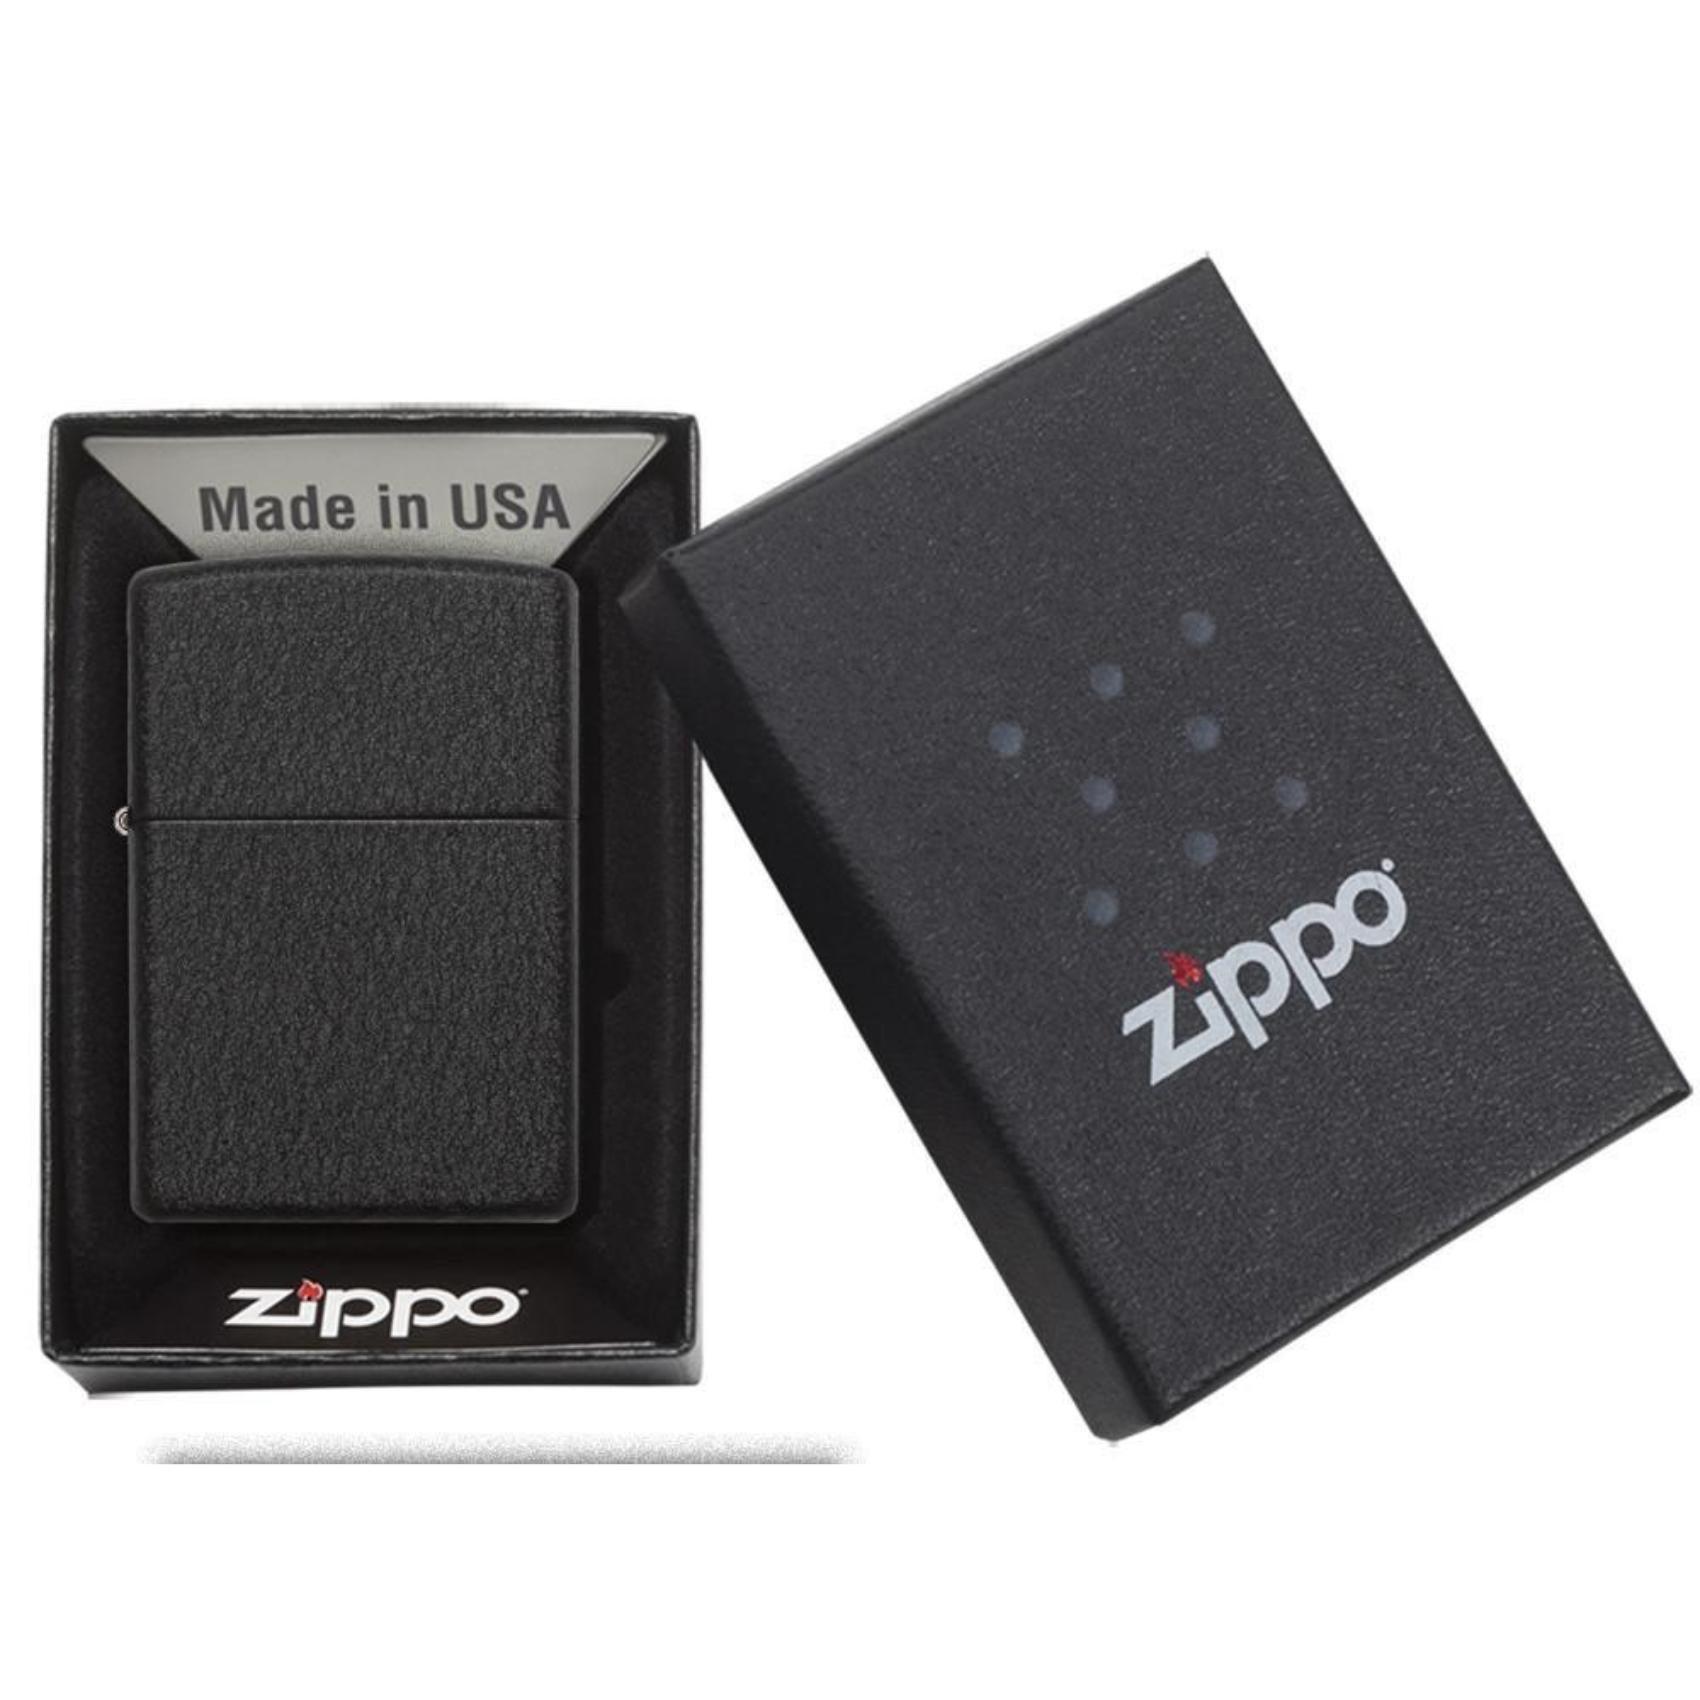 Αντιανεμικός αναπτήρας Zippo Black Crackle 236 σε μαύρο μεταλικό χρώμα με ματ υφή και δυνατότητα χάραξης.